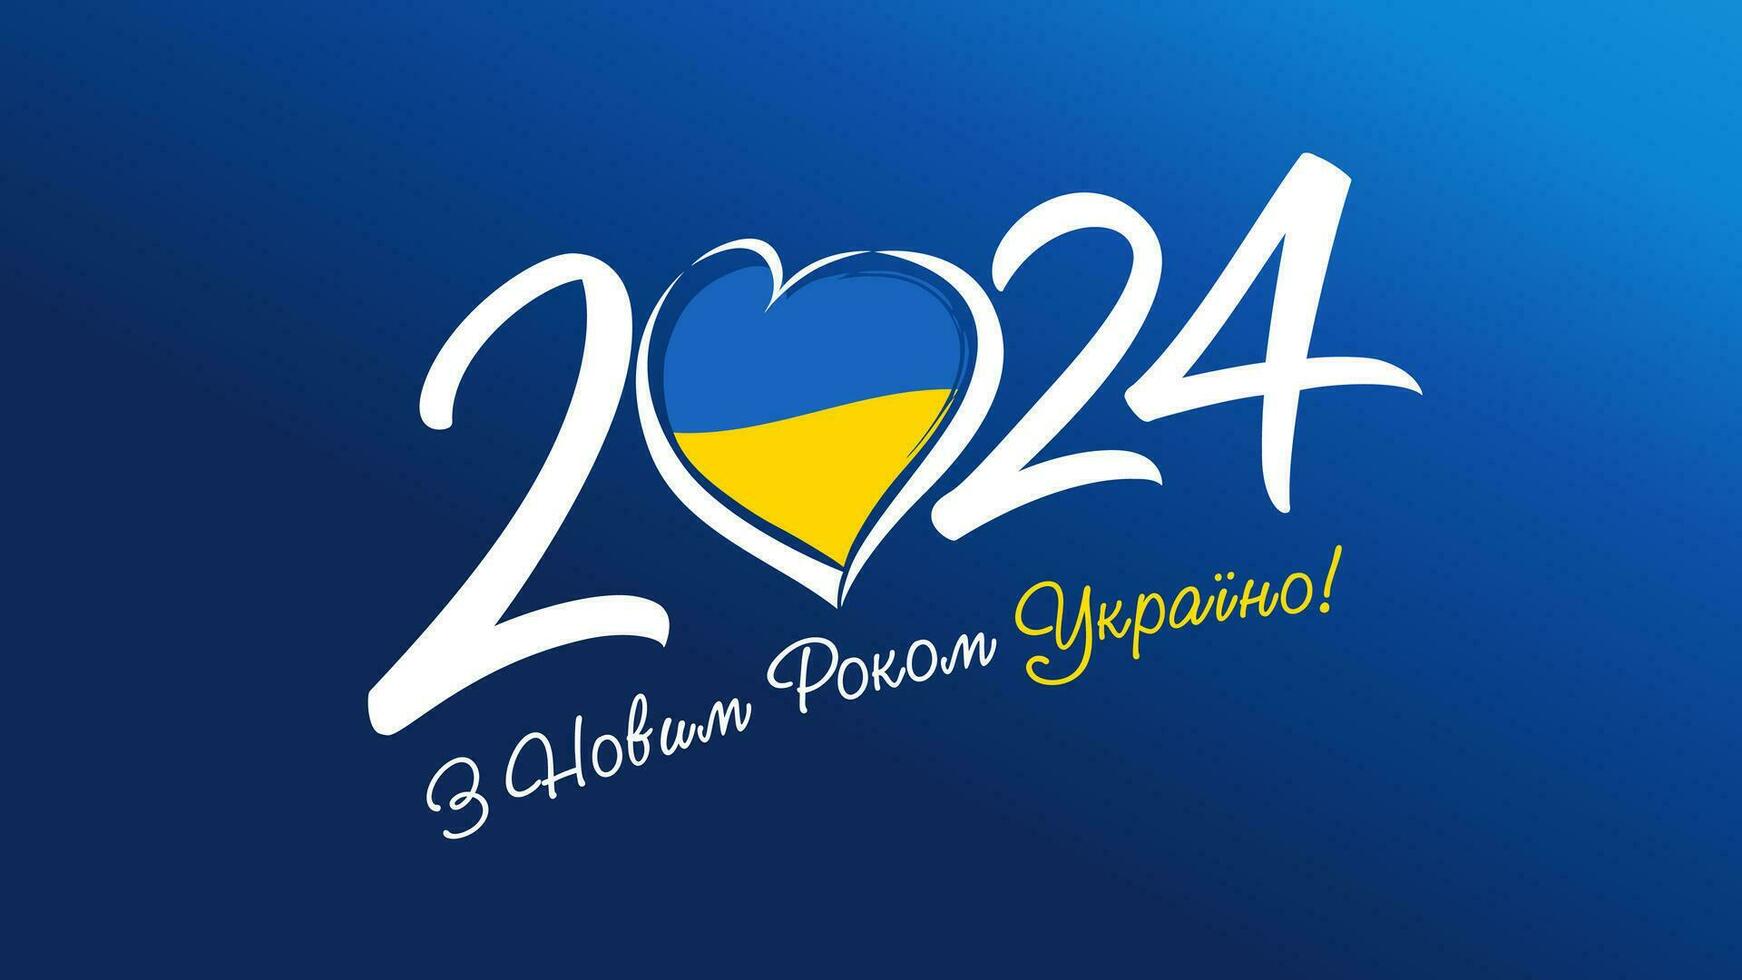 contento nuevo año 2024 Ucrania - ucranio texto. tarjeta postal diseño. vector